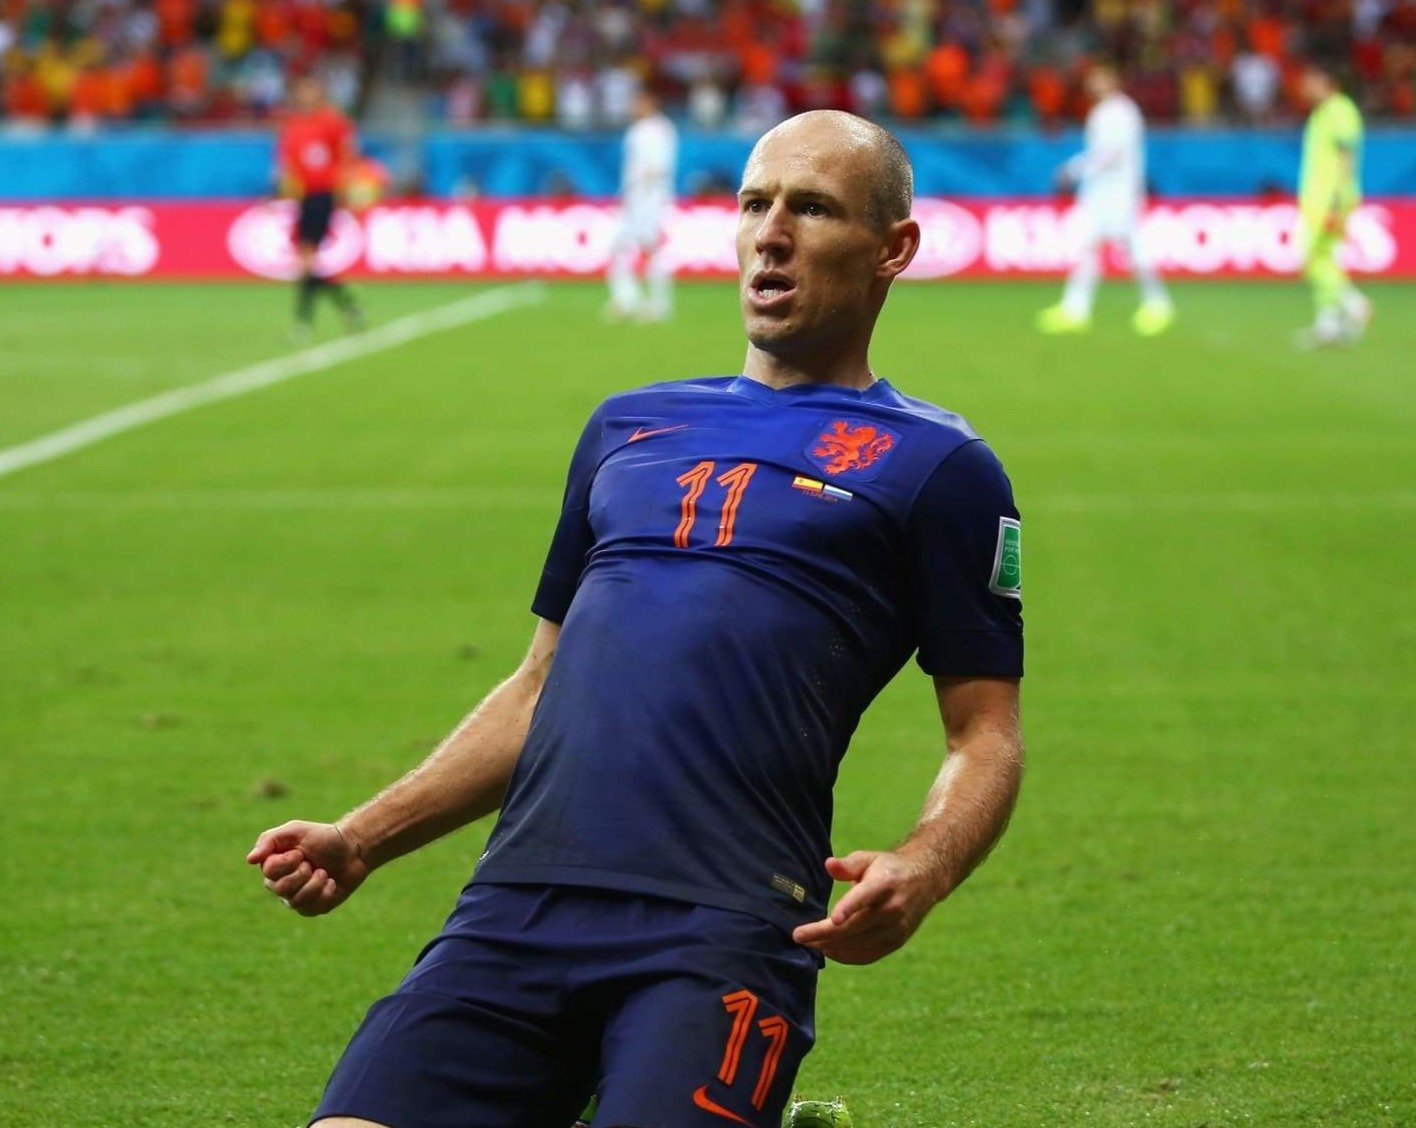 Holanda Suplente 2014 - Robben - Thunder Internacional